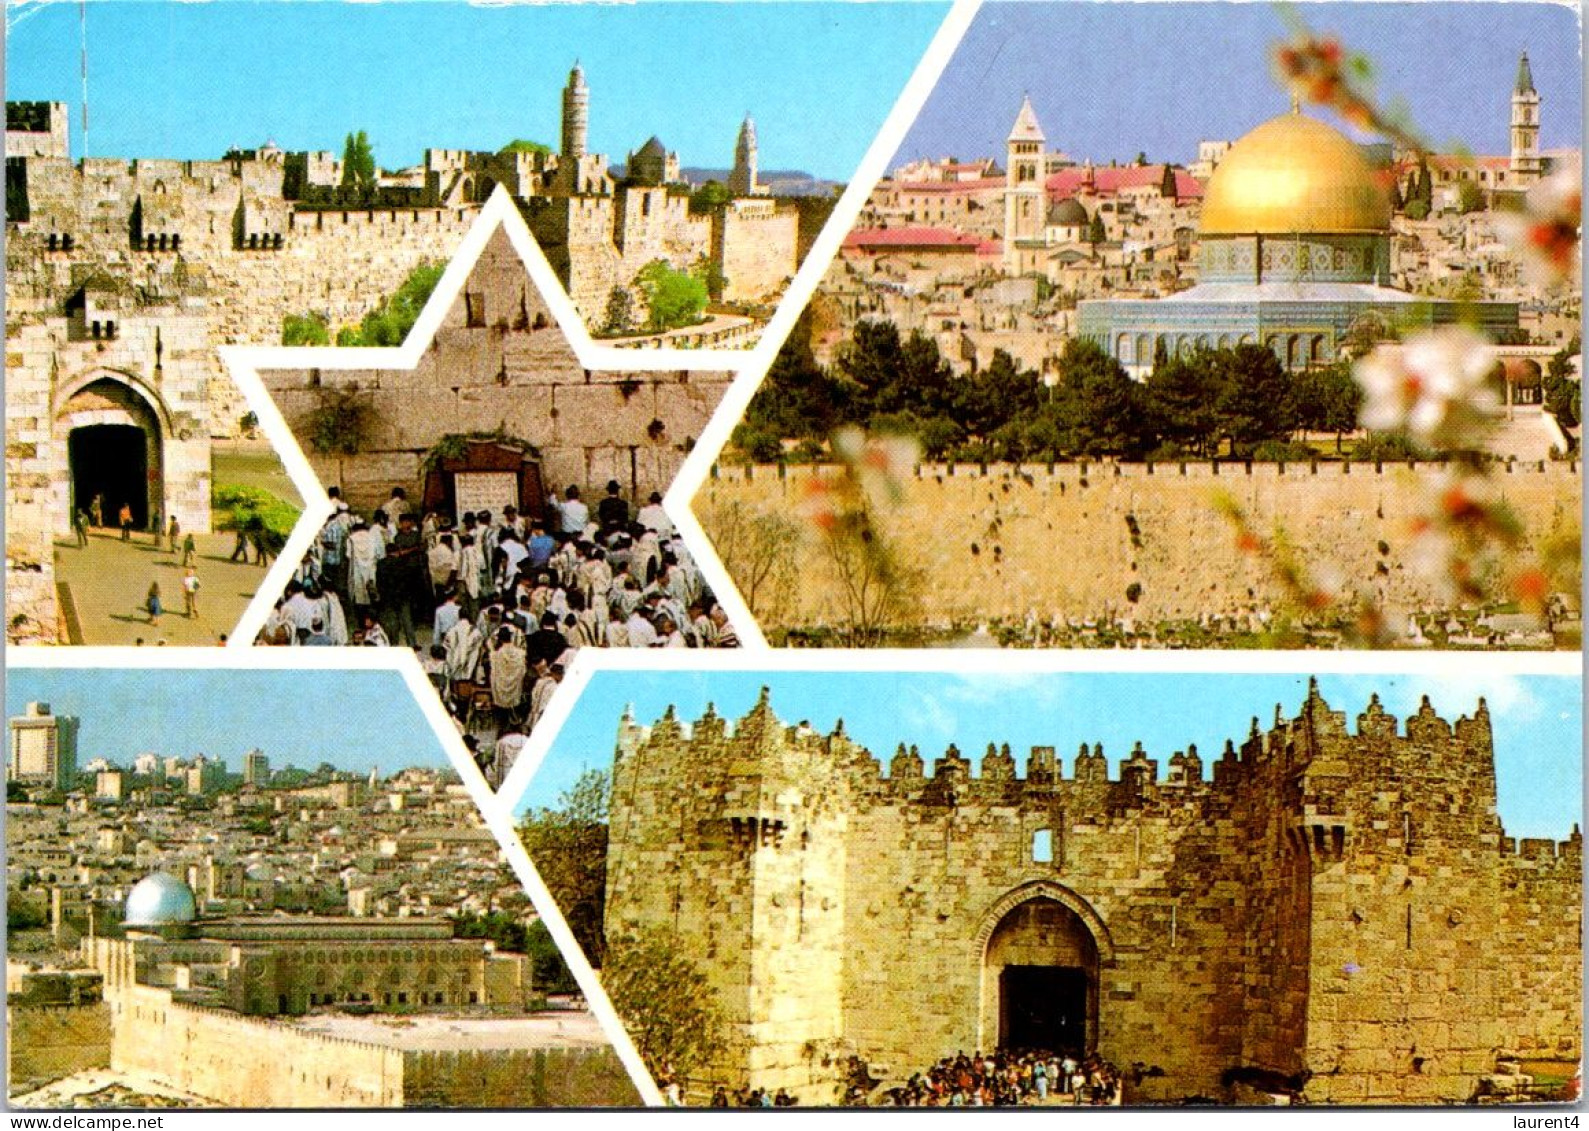 7-5-2024 (4 Z 23) Israel - Jerusalem (posted To France 2003) - Israel